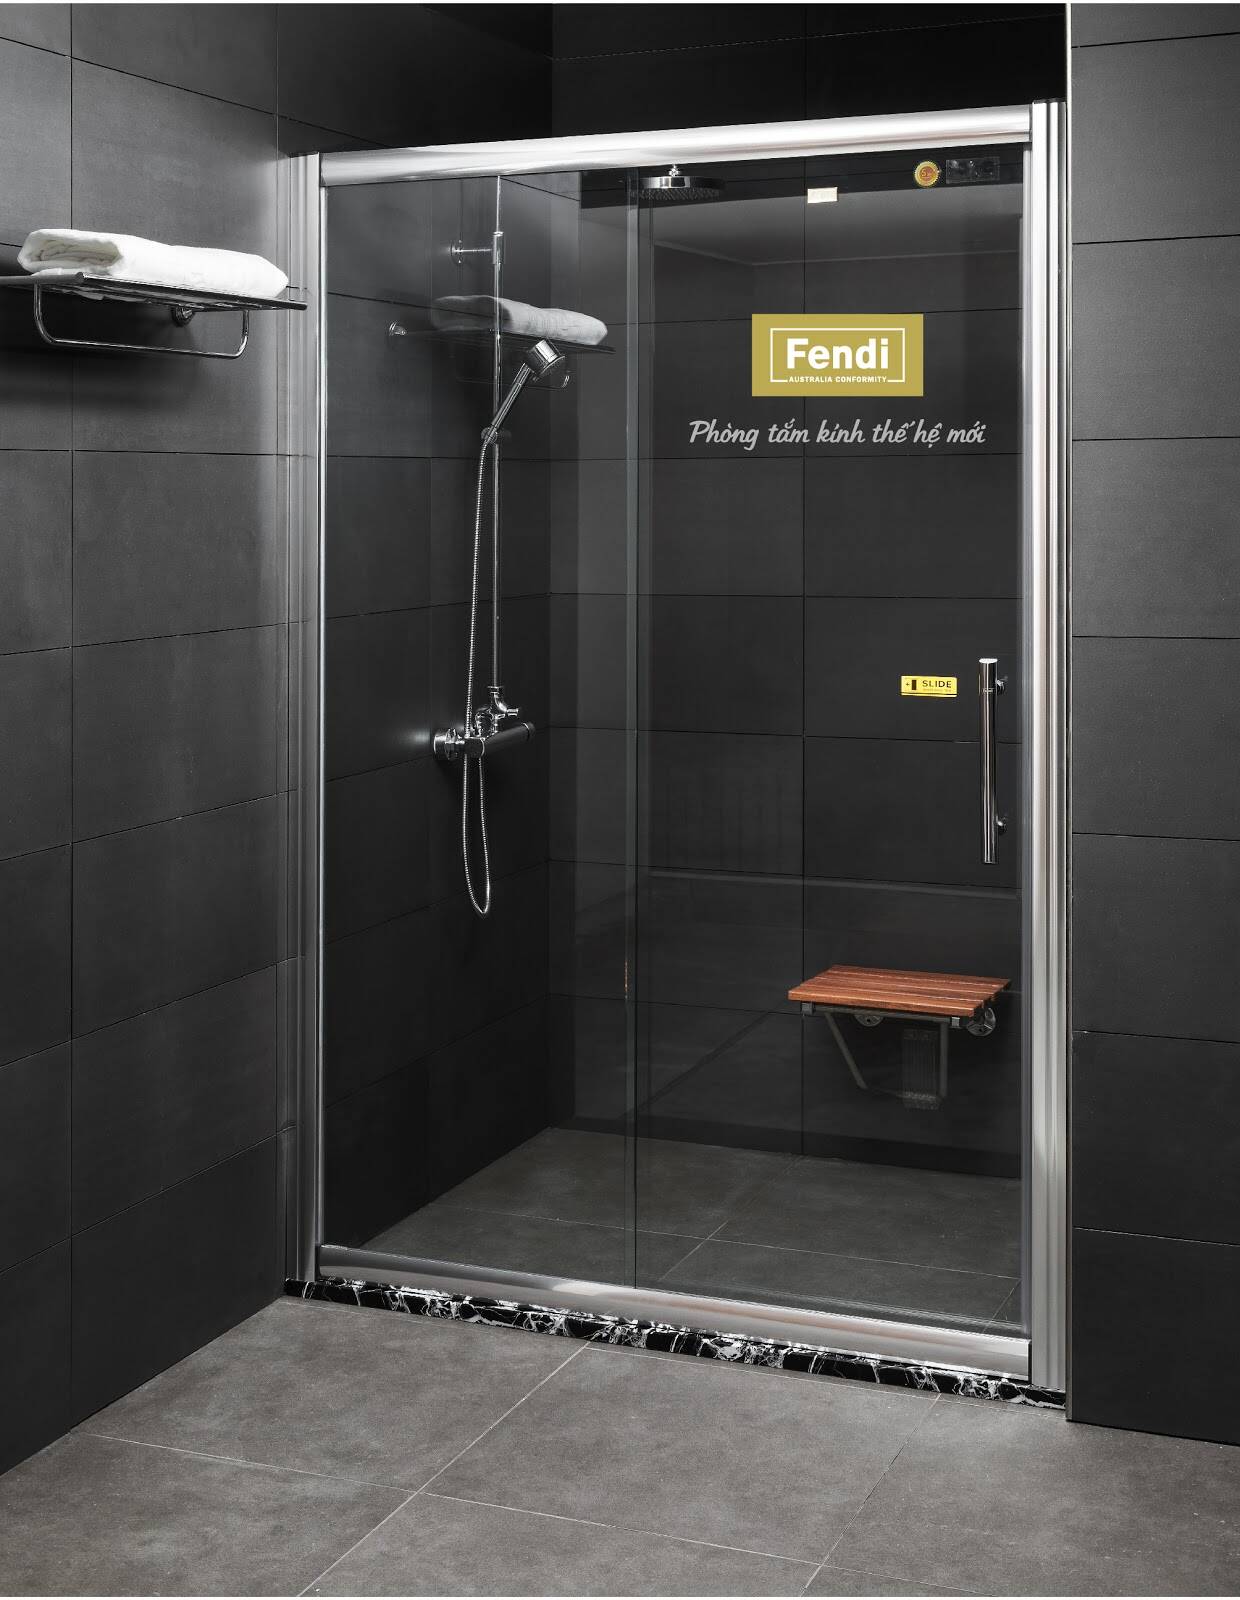 Hiện nay, phòng tắm kính không chỉ được sử dụng tại các khu chung cư cao cấp, biệt thự mà còn phổ biến tại các công trình dân dụng